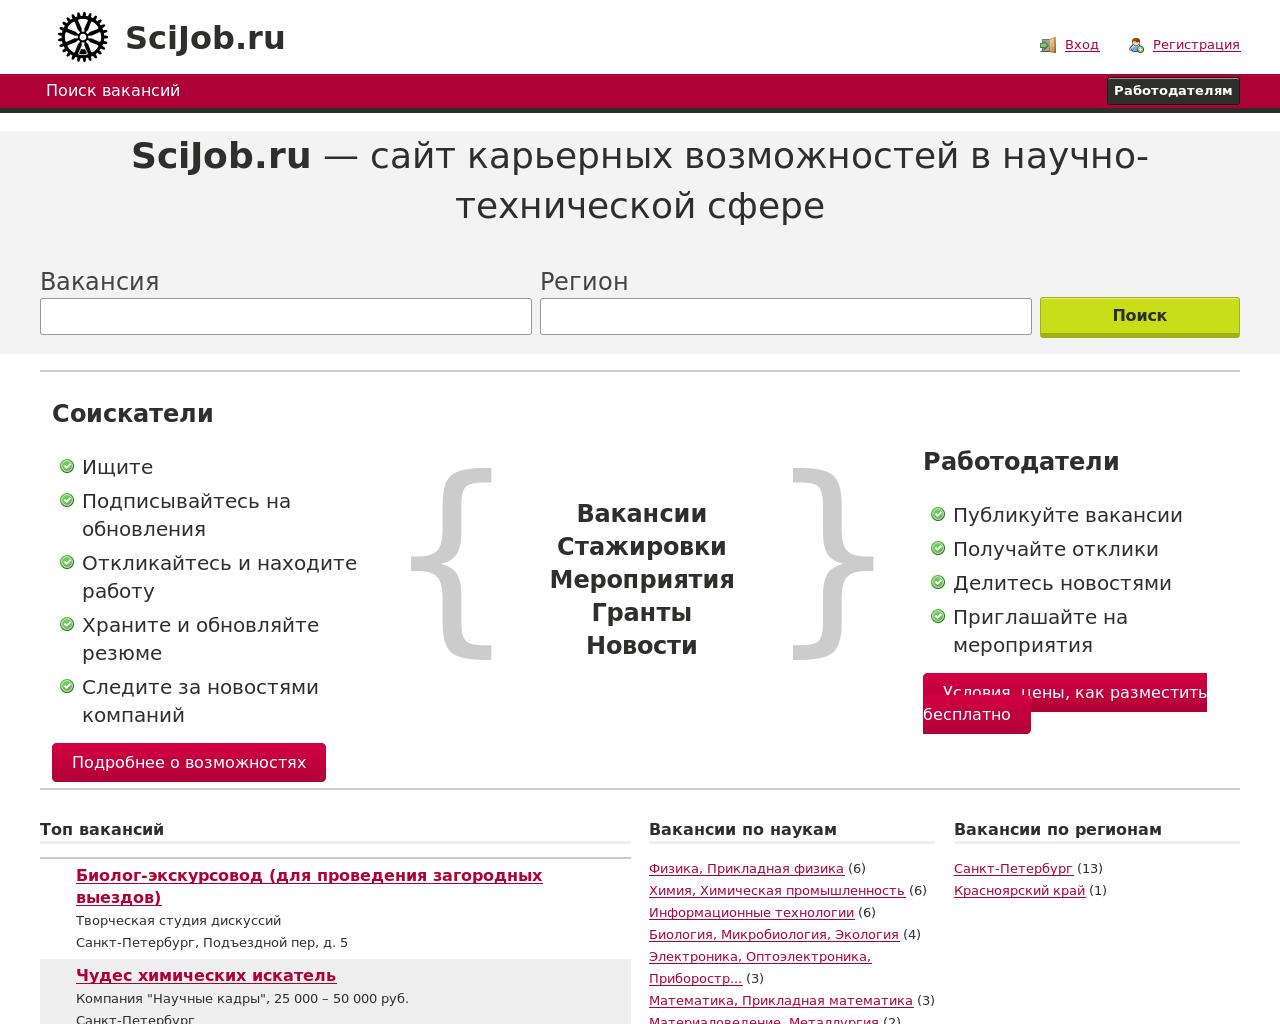 Изображение сайта scijob.ru в разрешении 1280x1024